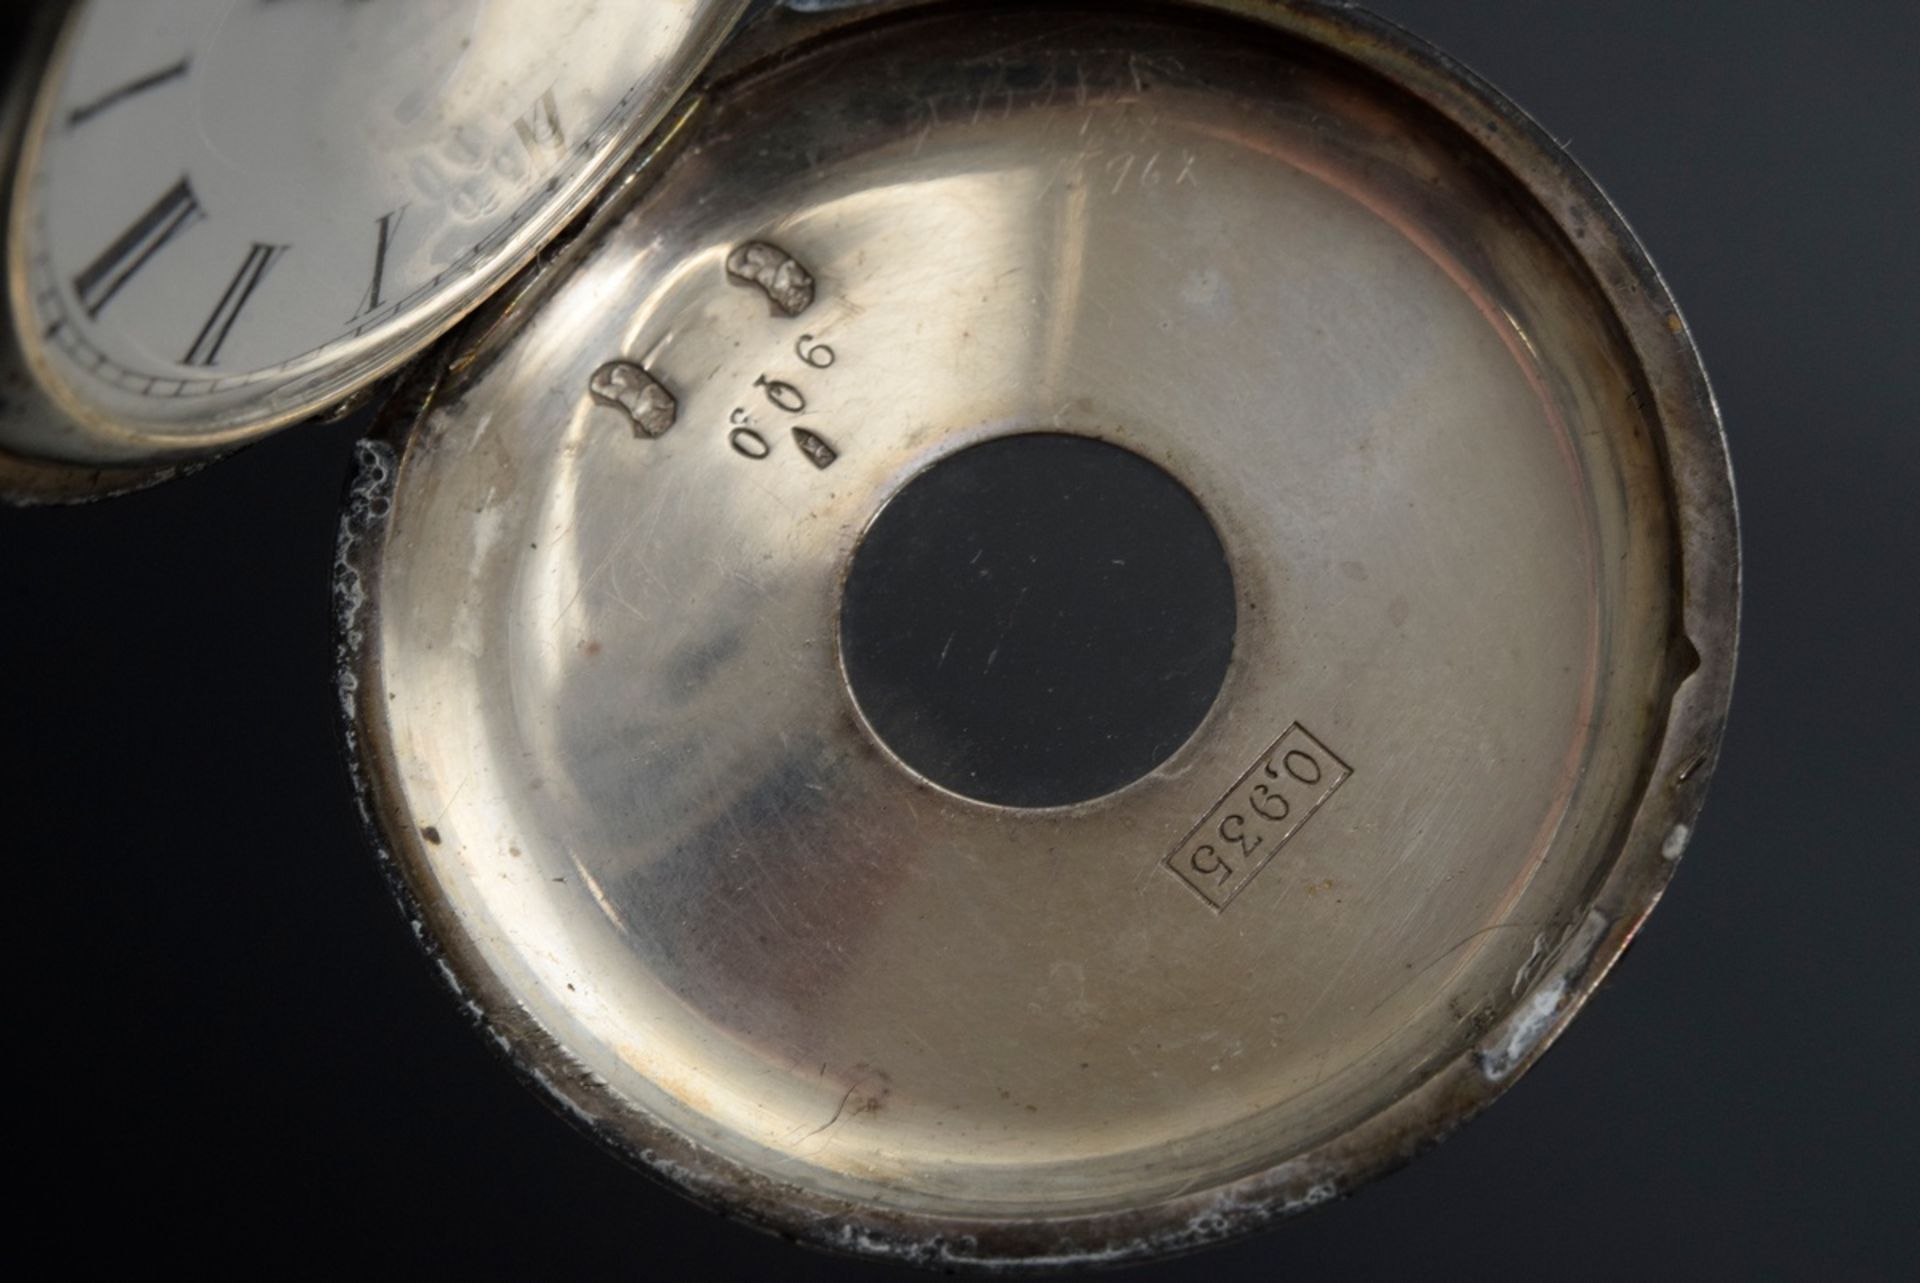 2 Diverse Taschenuhren mit römischen Ziffern: Longines Lever, Silber 935 an geschwärzter Stahlkette - Bild 12 aus 15